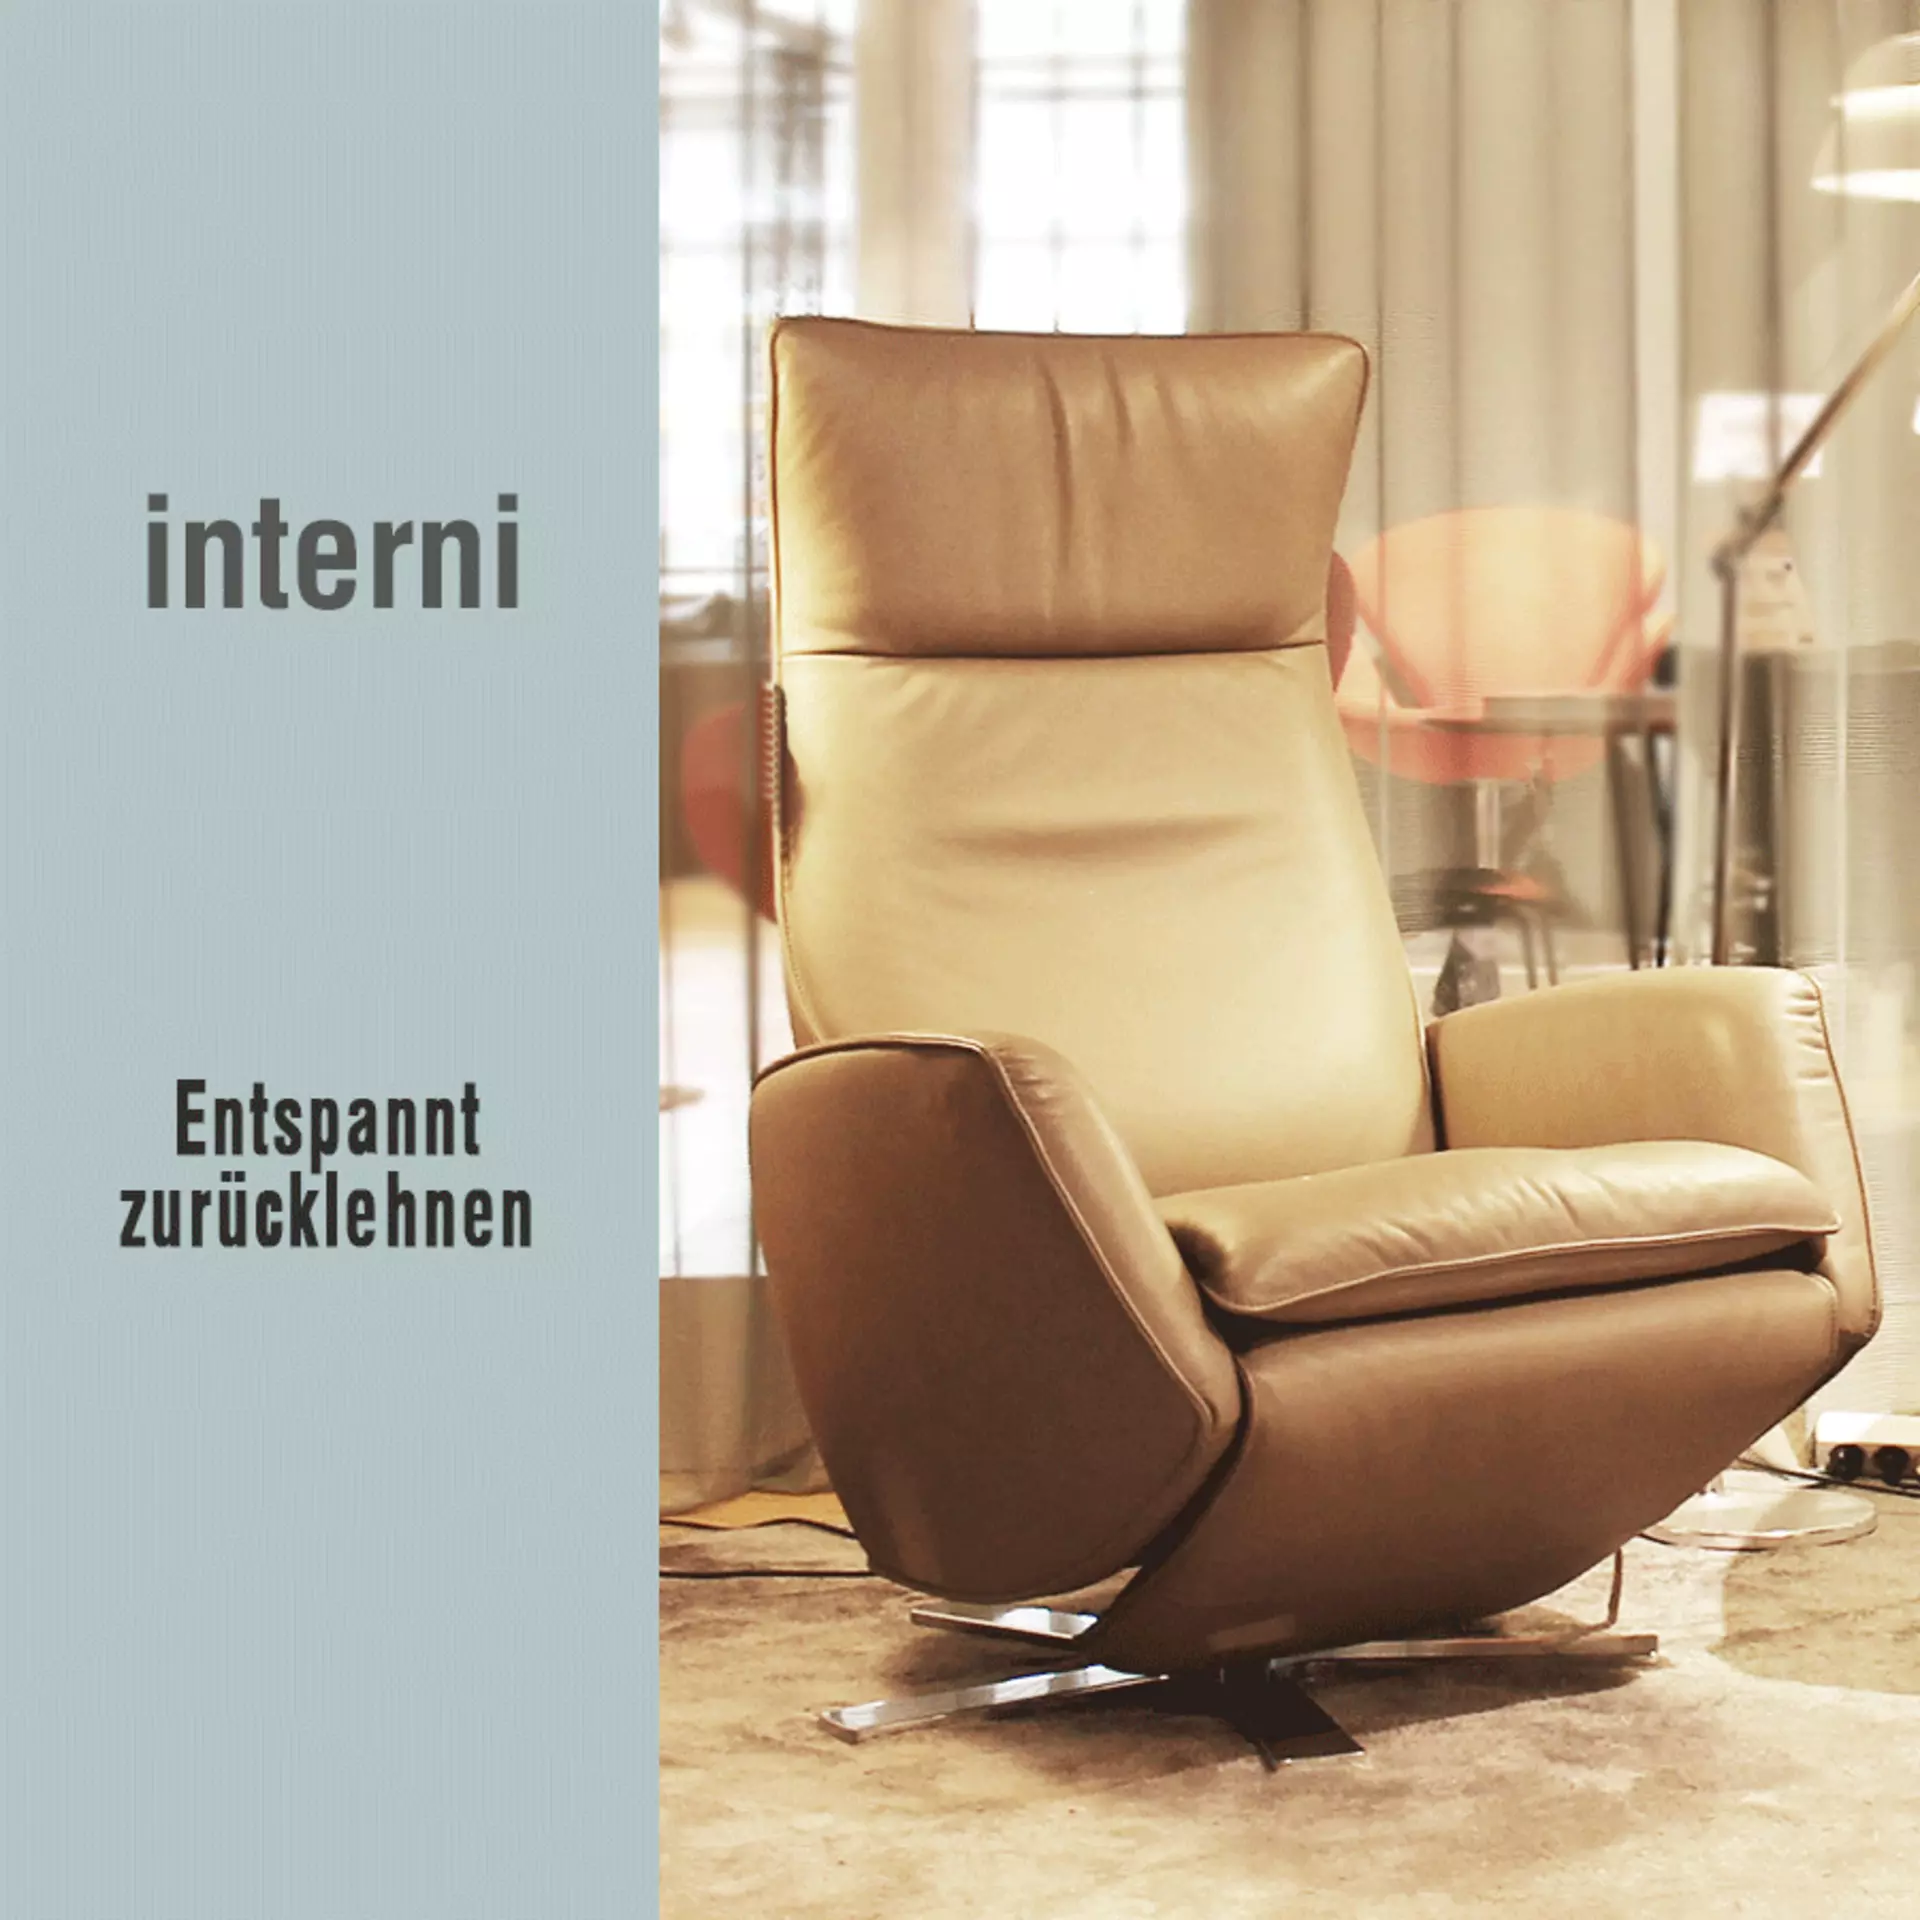 Entspannt zurücklehnen - komfortable Sitzgelegenheiten in edlen Designs bei interni by inhofer. Jetzt das exklusive Angebot entdecken